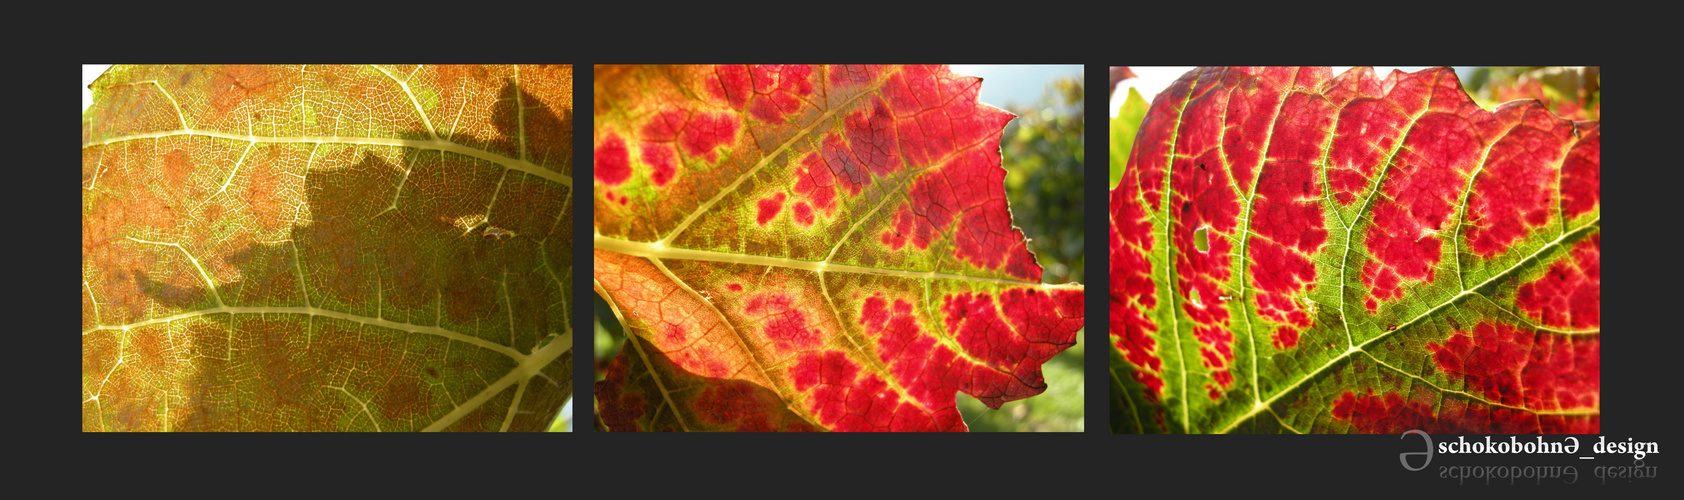 Weinblätter im Herbst